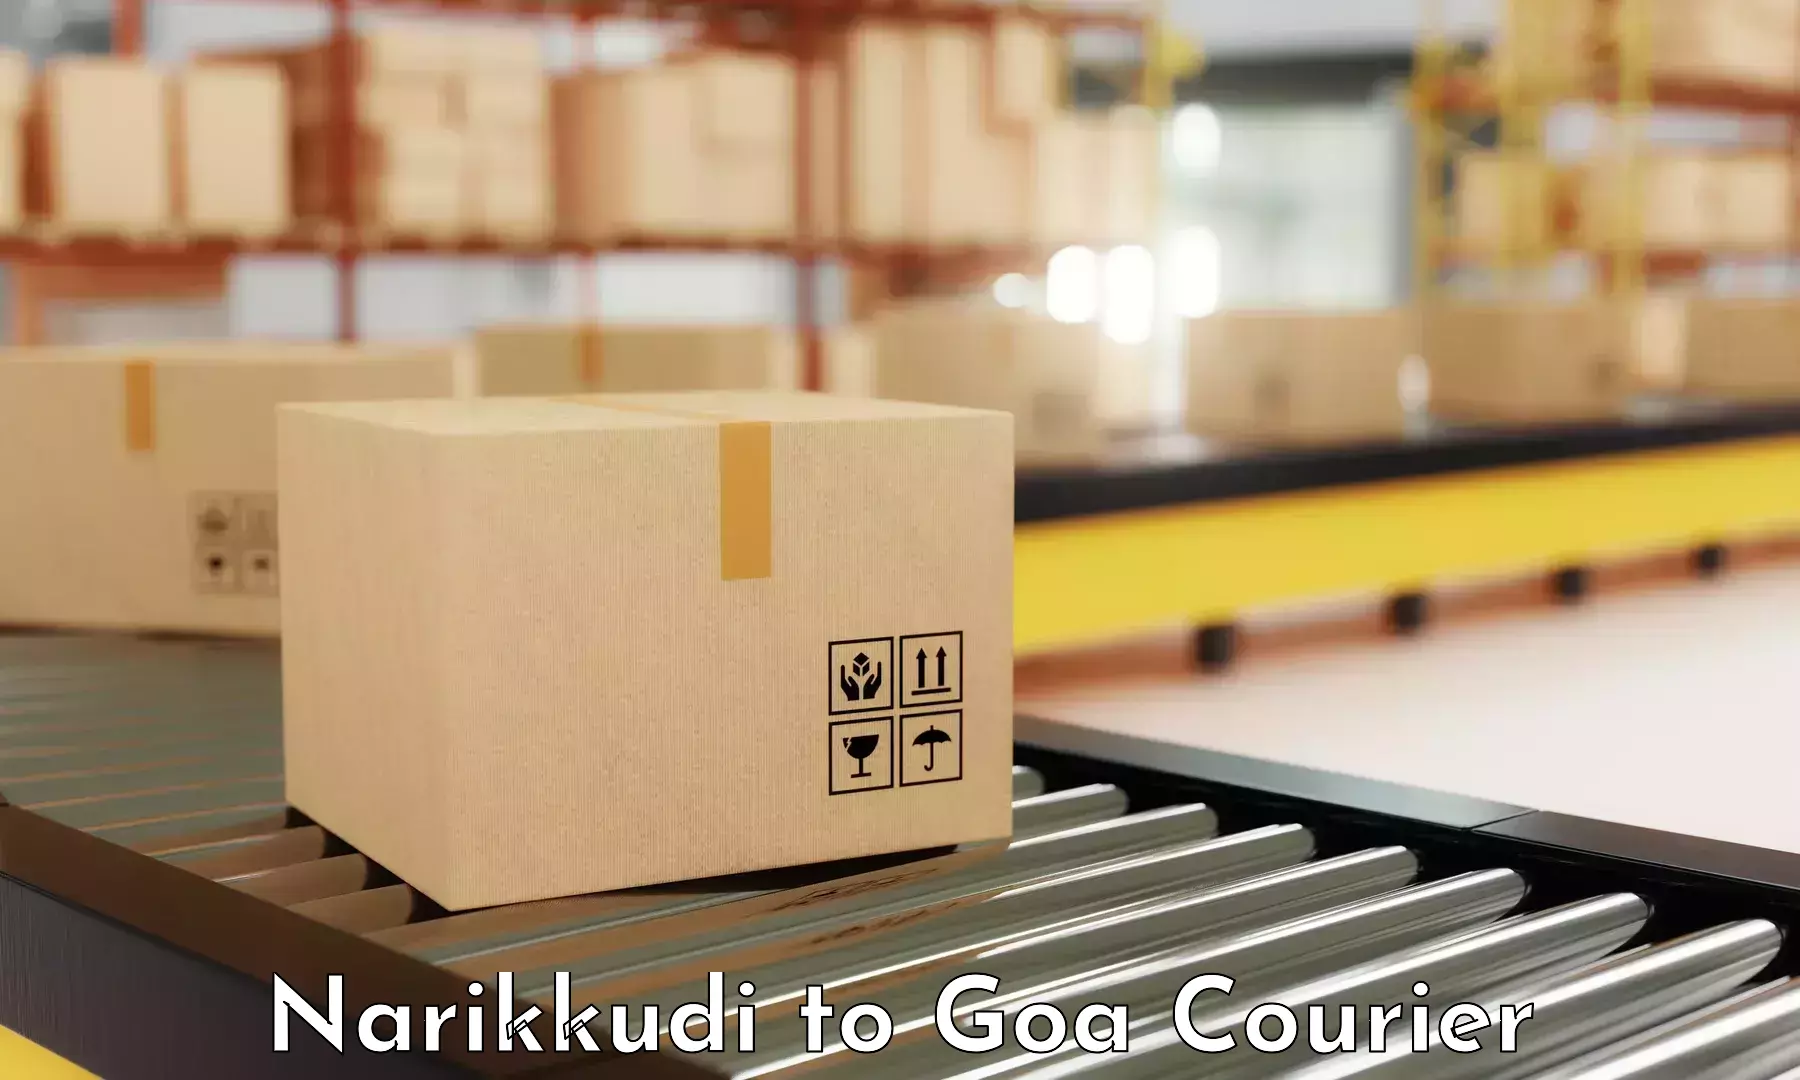 Courier service comparison in Narikkudi to South Goa